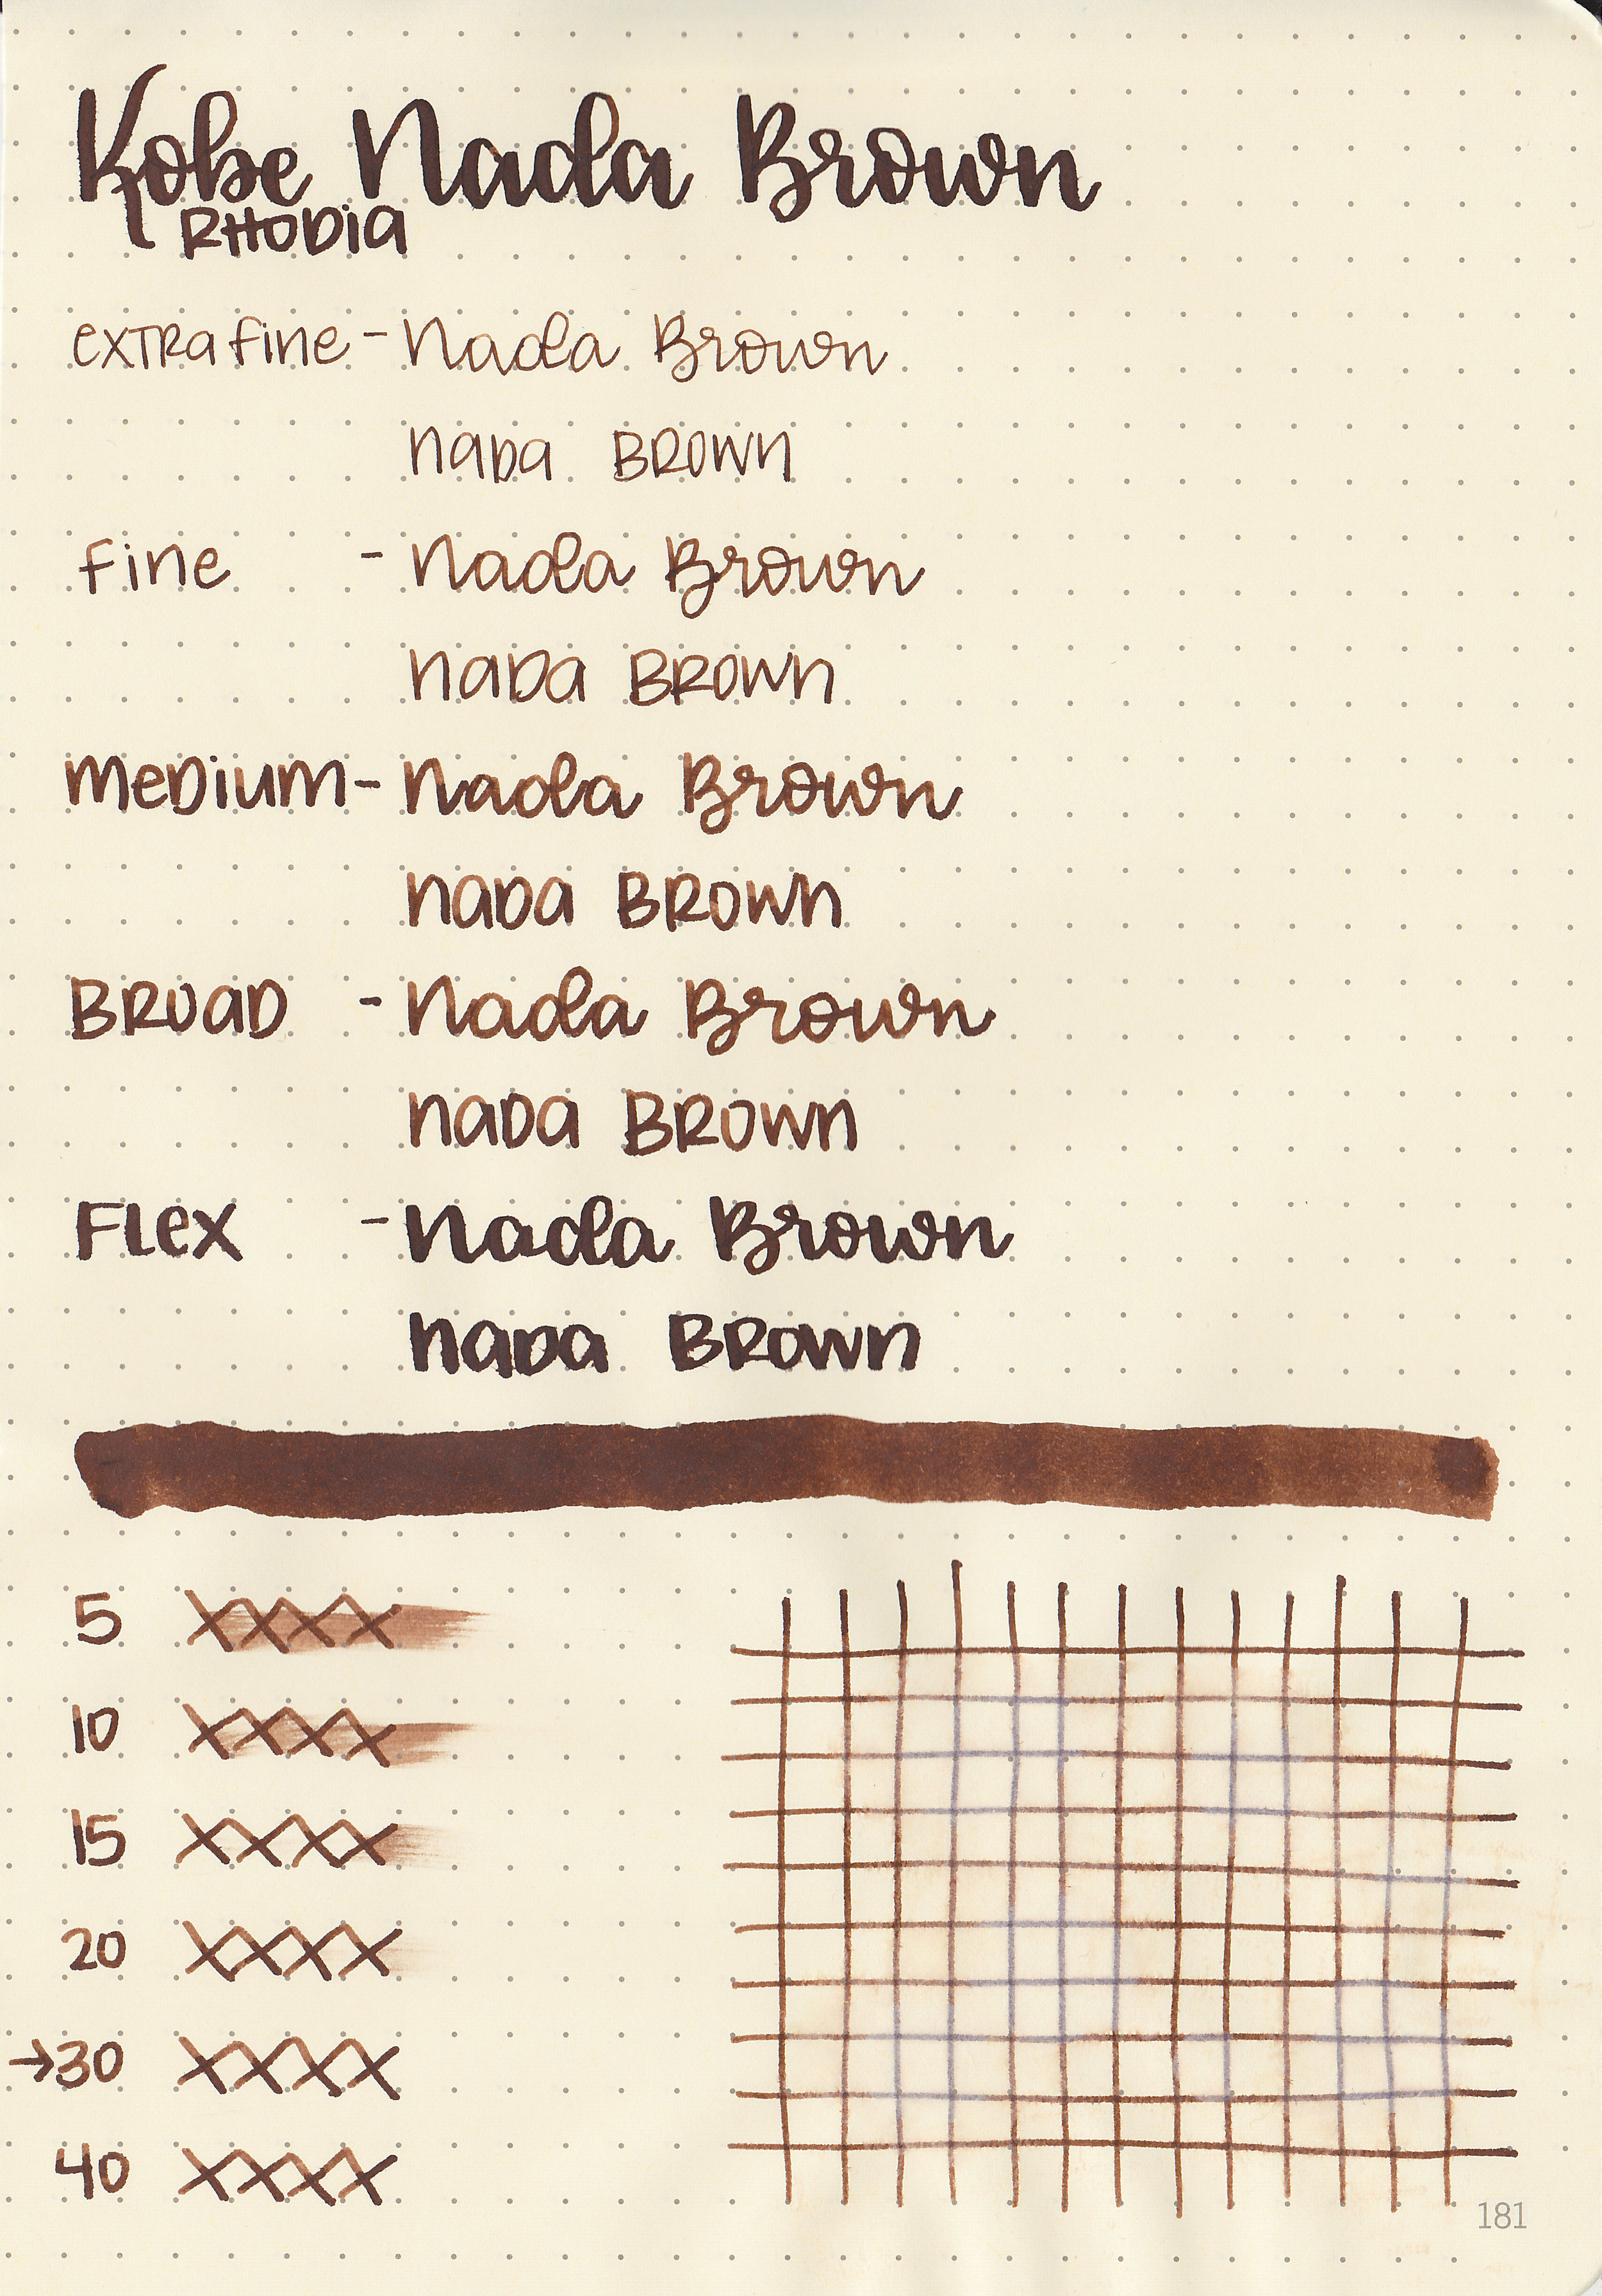 nk-nada-brown-5.jpg